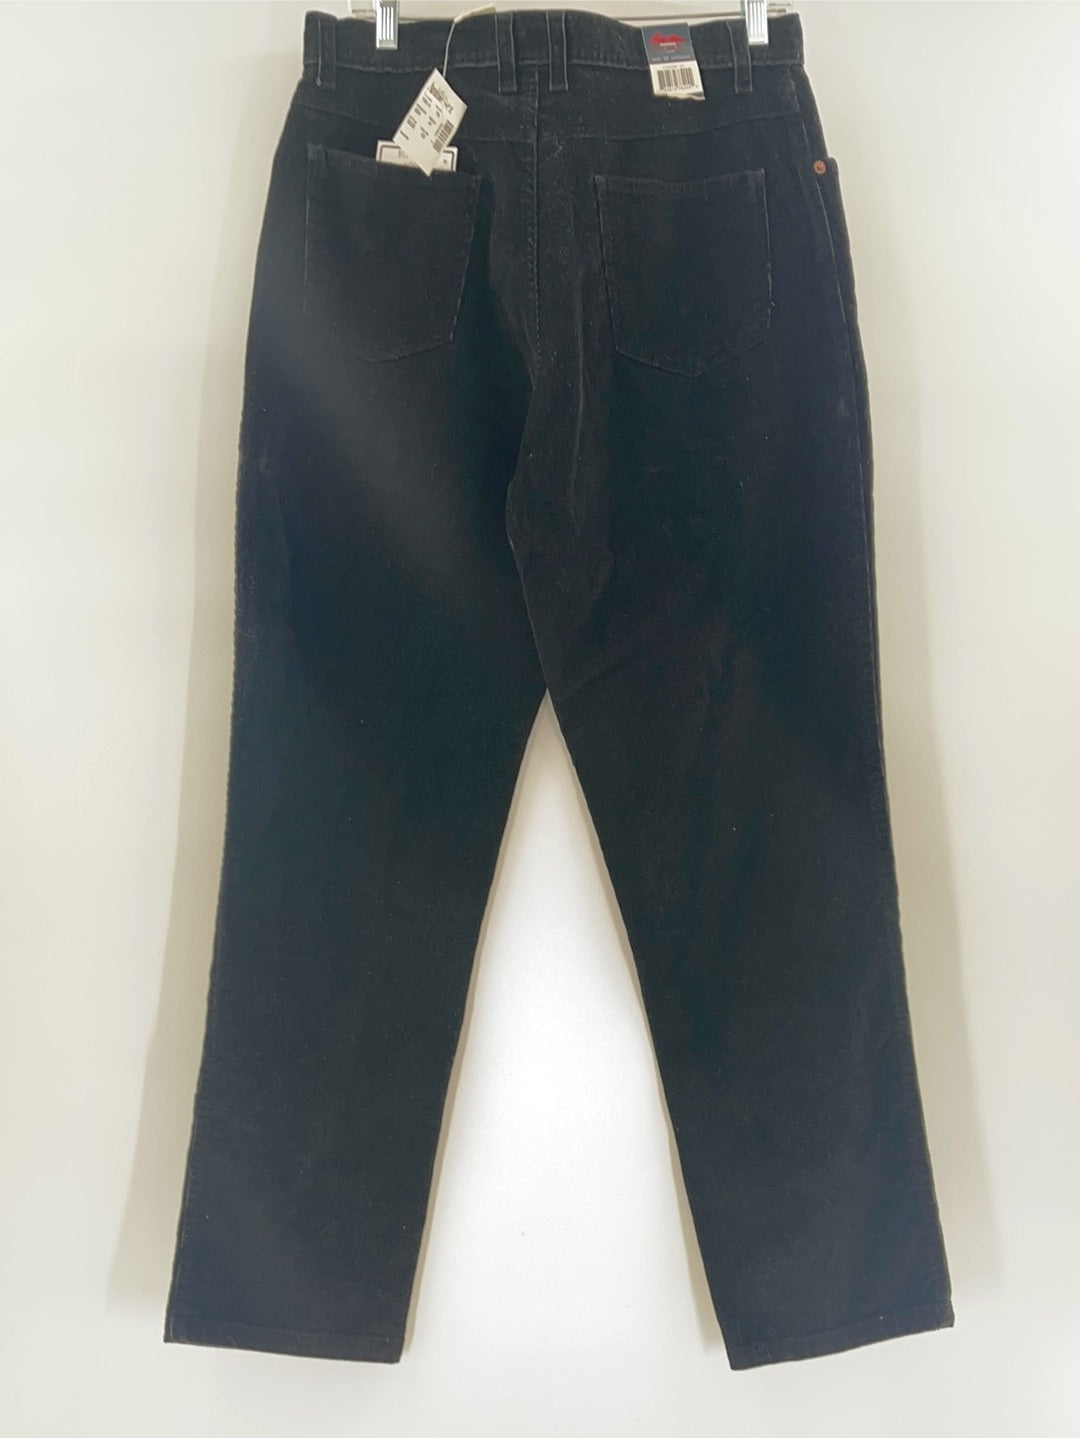 Bill Blass Jeanswear Stretch Corduroy Deadstock (Size 10 Average)